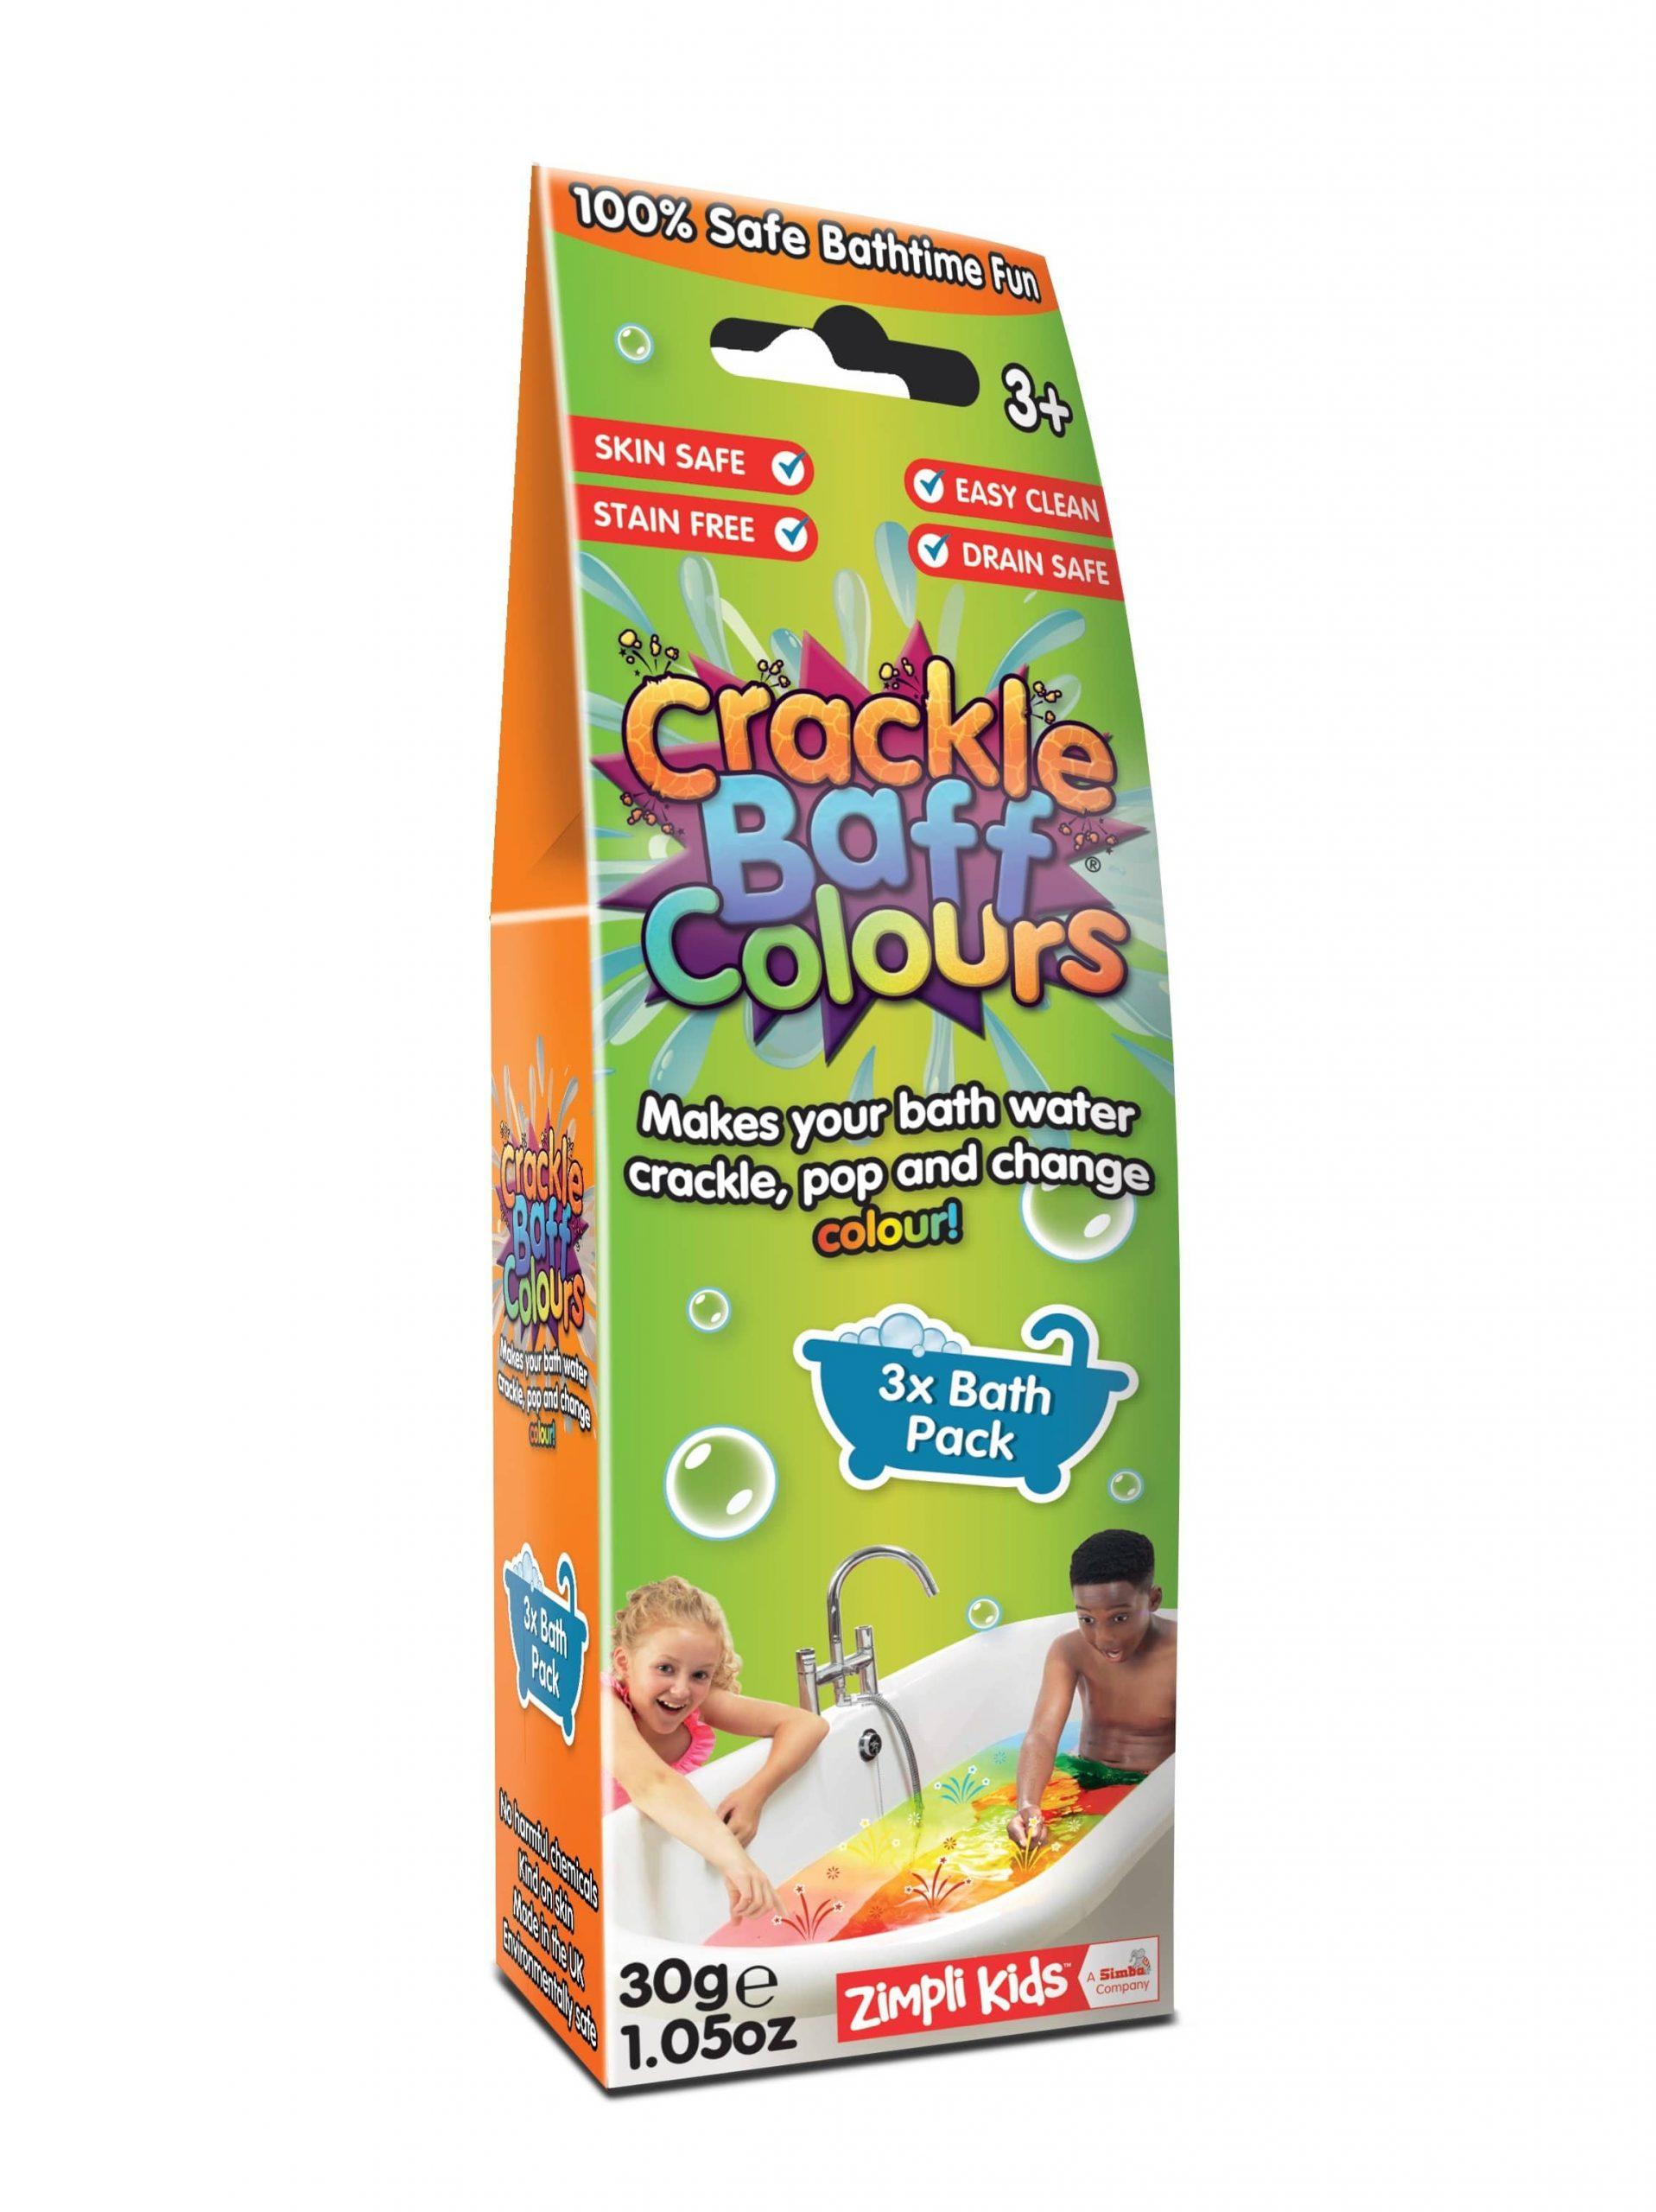 لعبة المفرقعات السحرية Glibbi-Zimpli Kids - Crackle Baff Colors